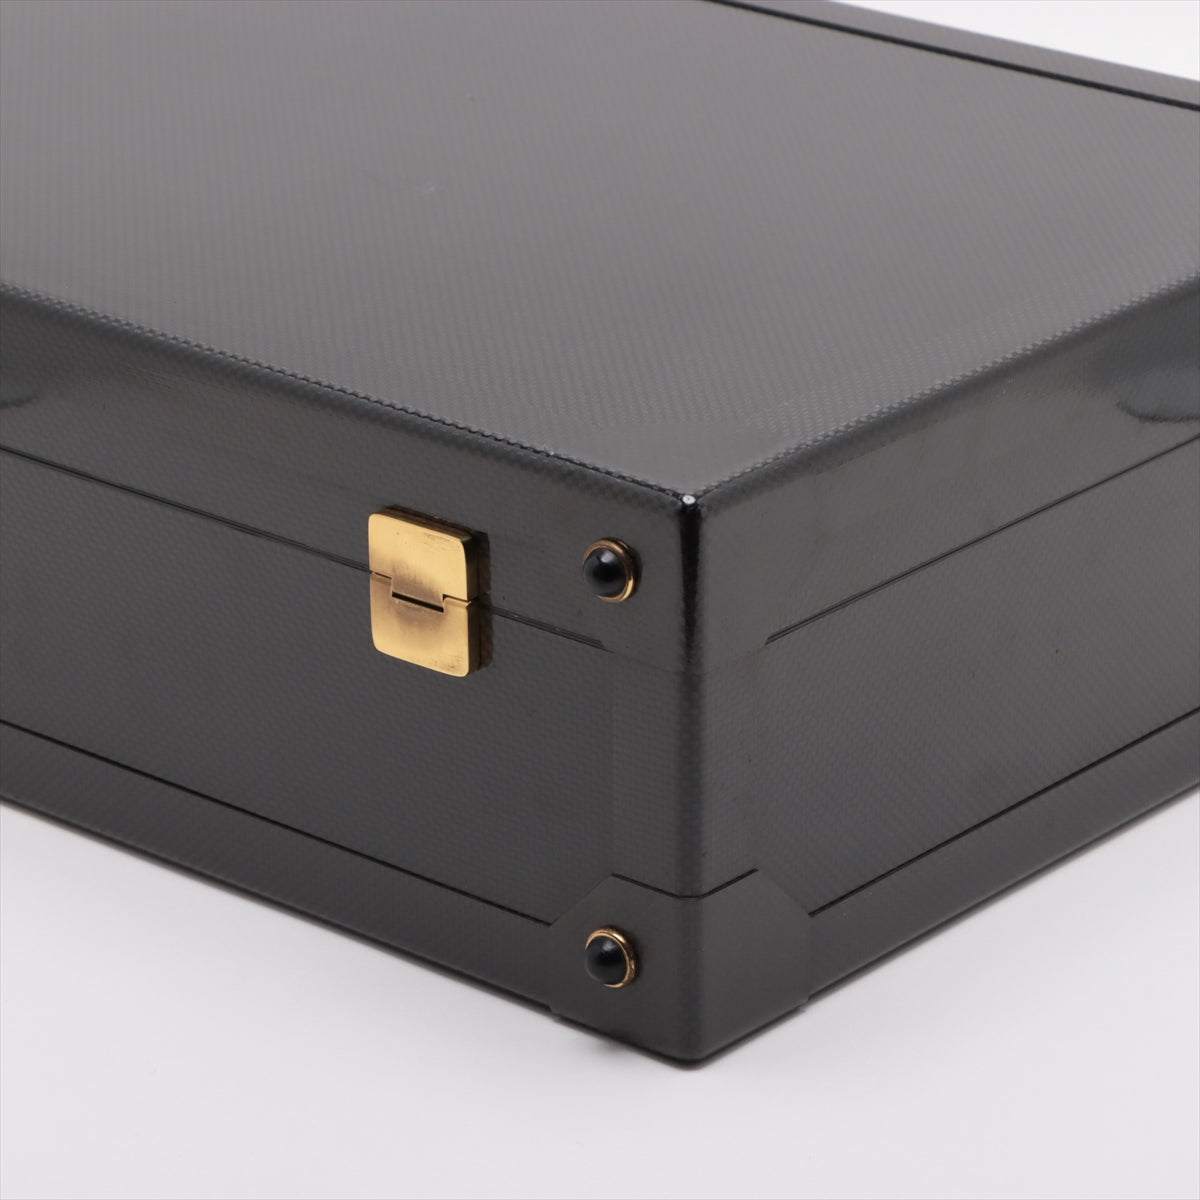 Hermès Espace GM Carbon × Veau Chamonix Attache case Gold Metal fittings 305/500 With a key